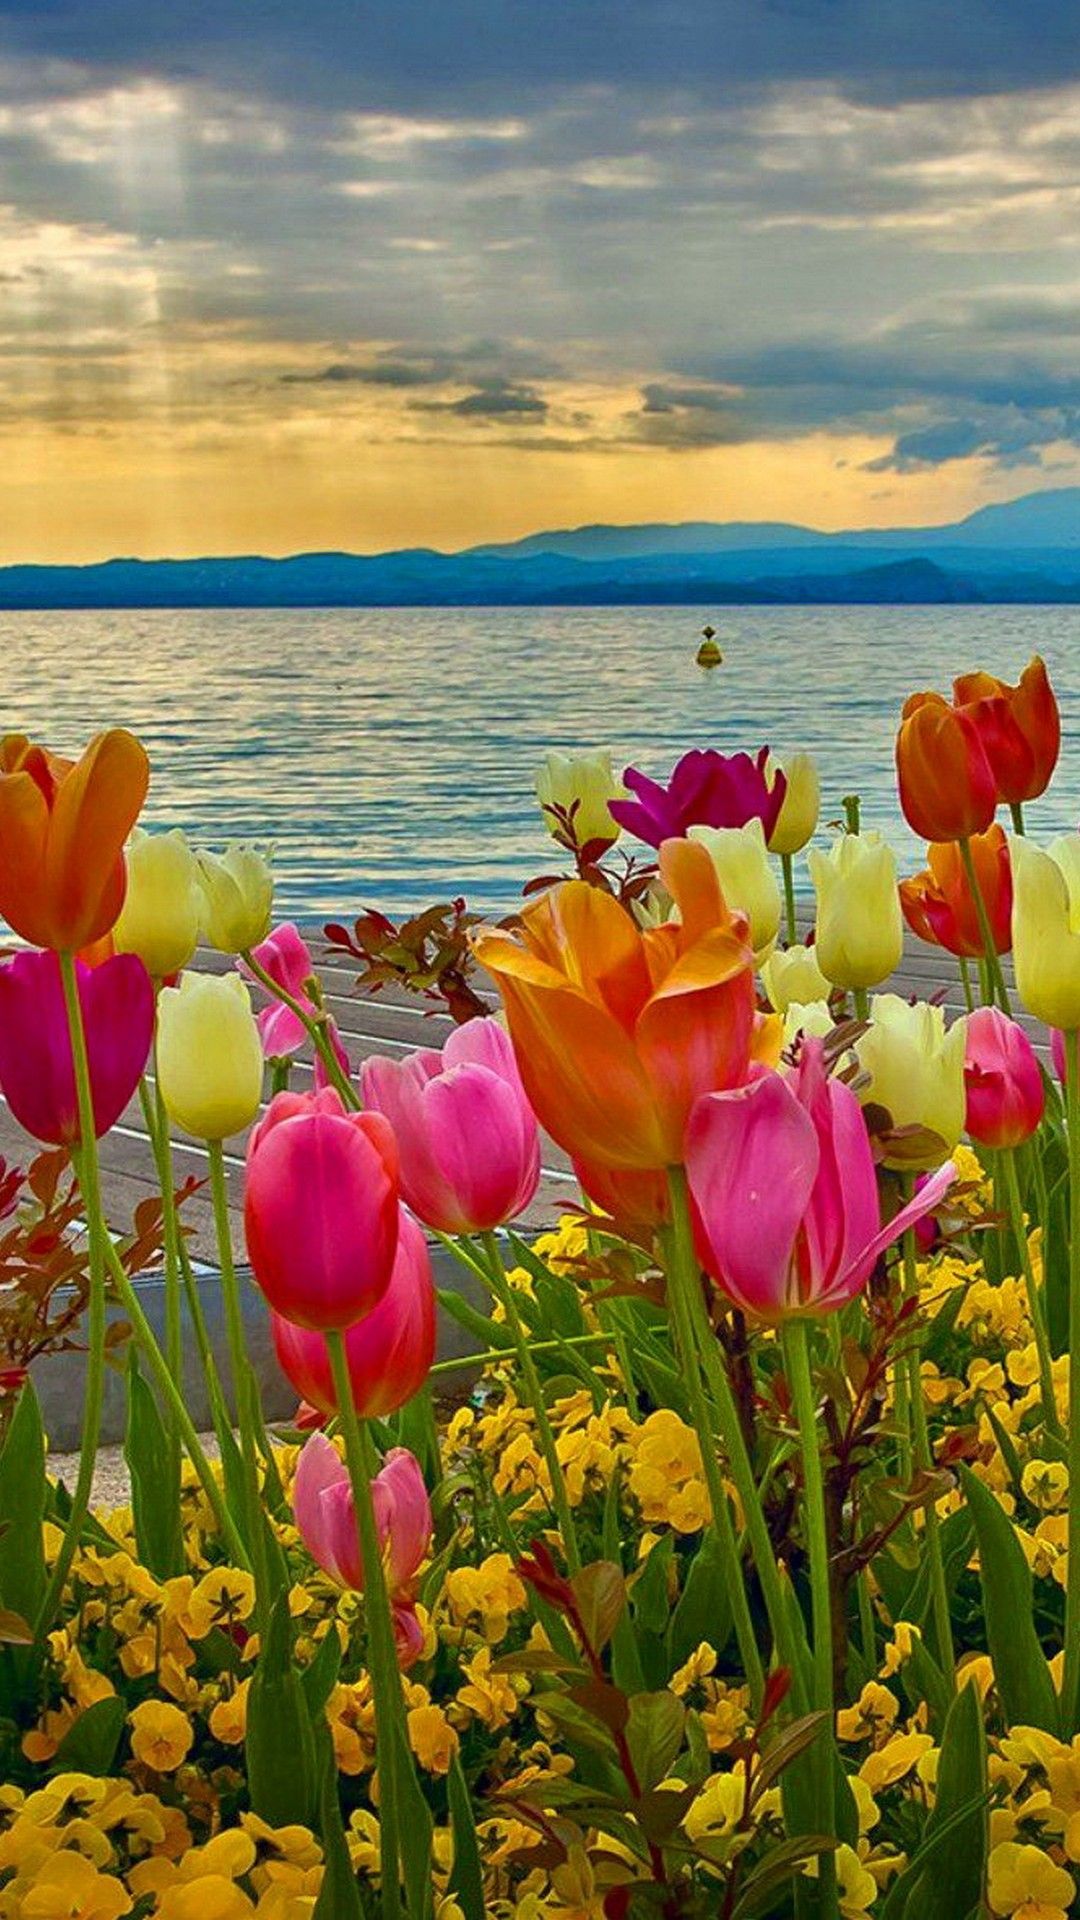 تصویر شاهکار گل های بهاری در کنار دریا با کیفیت ویژه